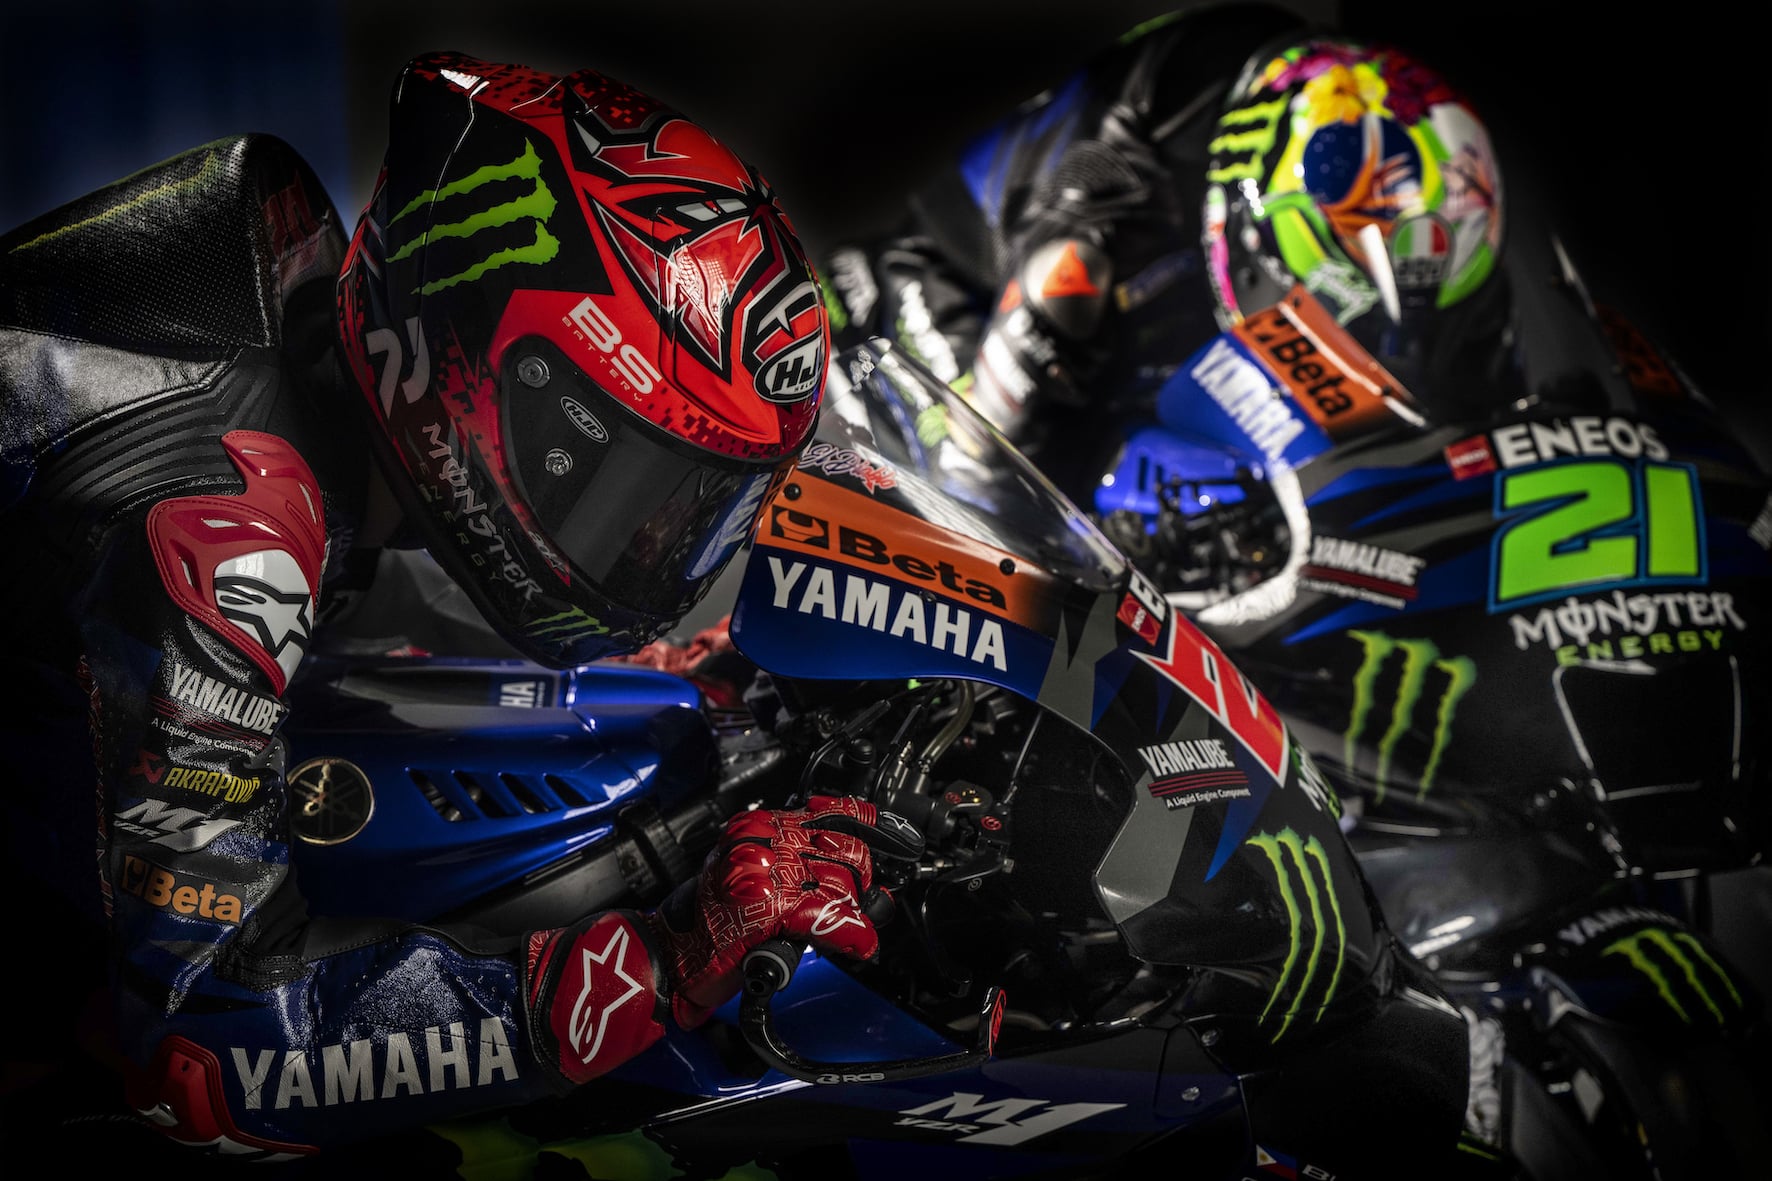 Axalta is de officiële sponsor van Monster Energy Yamaha MotoGP voor het seizoen 2023 [Partnerbijdrage]